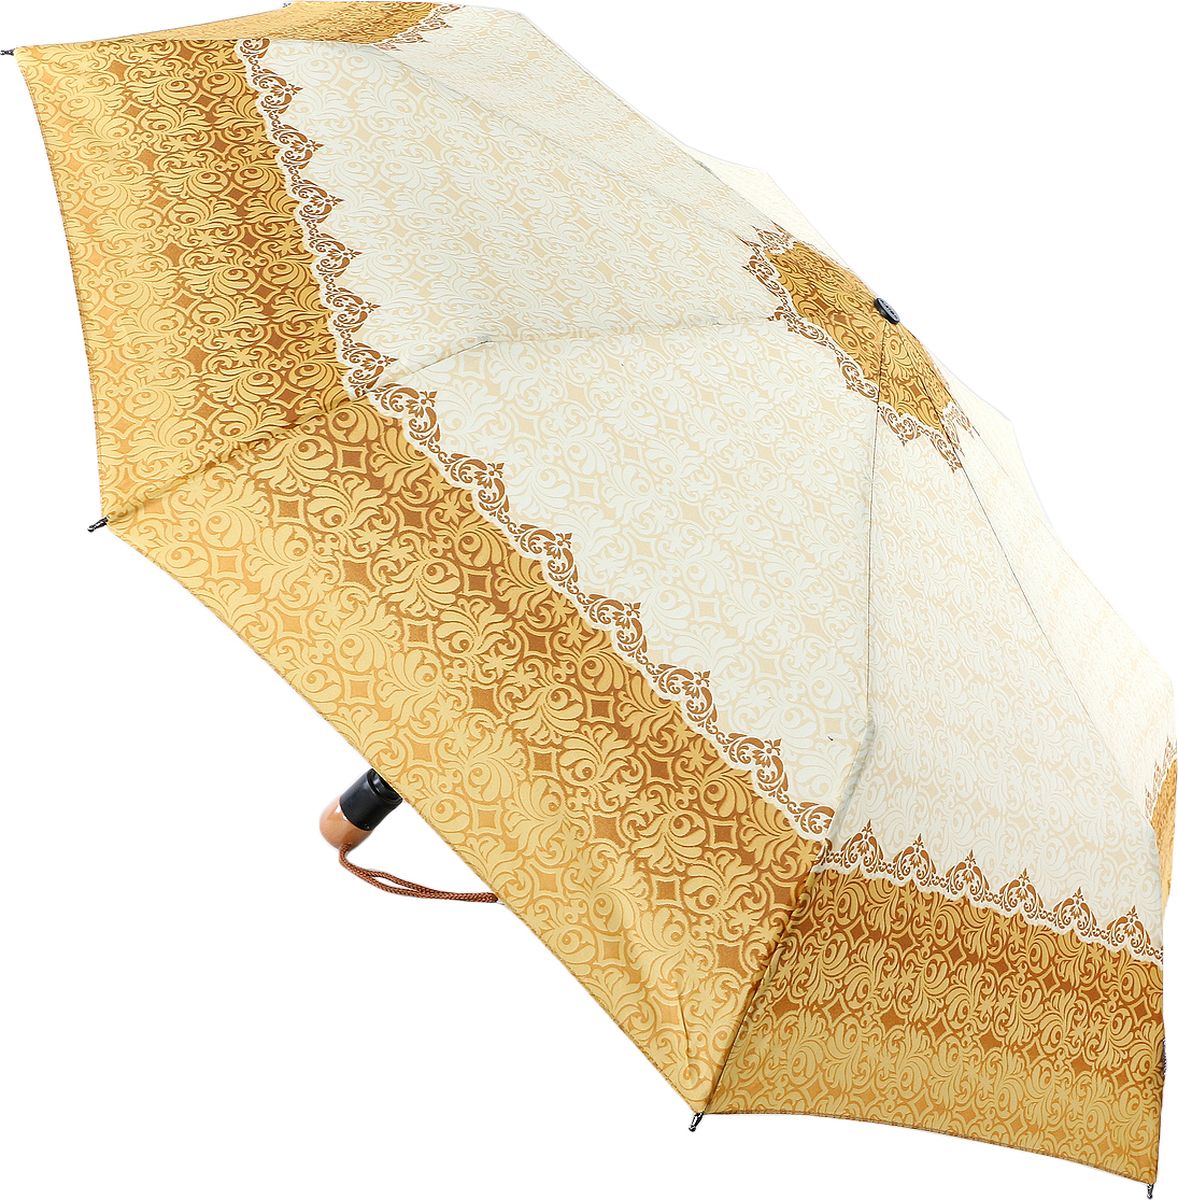 Зонт женский Airton, автомат, 3 сложения, цвет: бежевый, песочный, коричневый. 3935-150